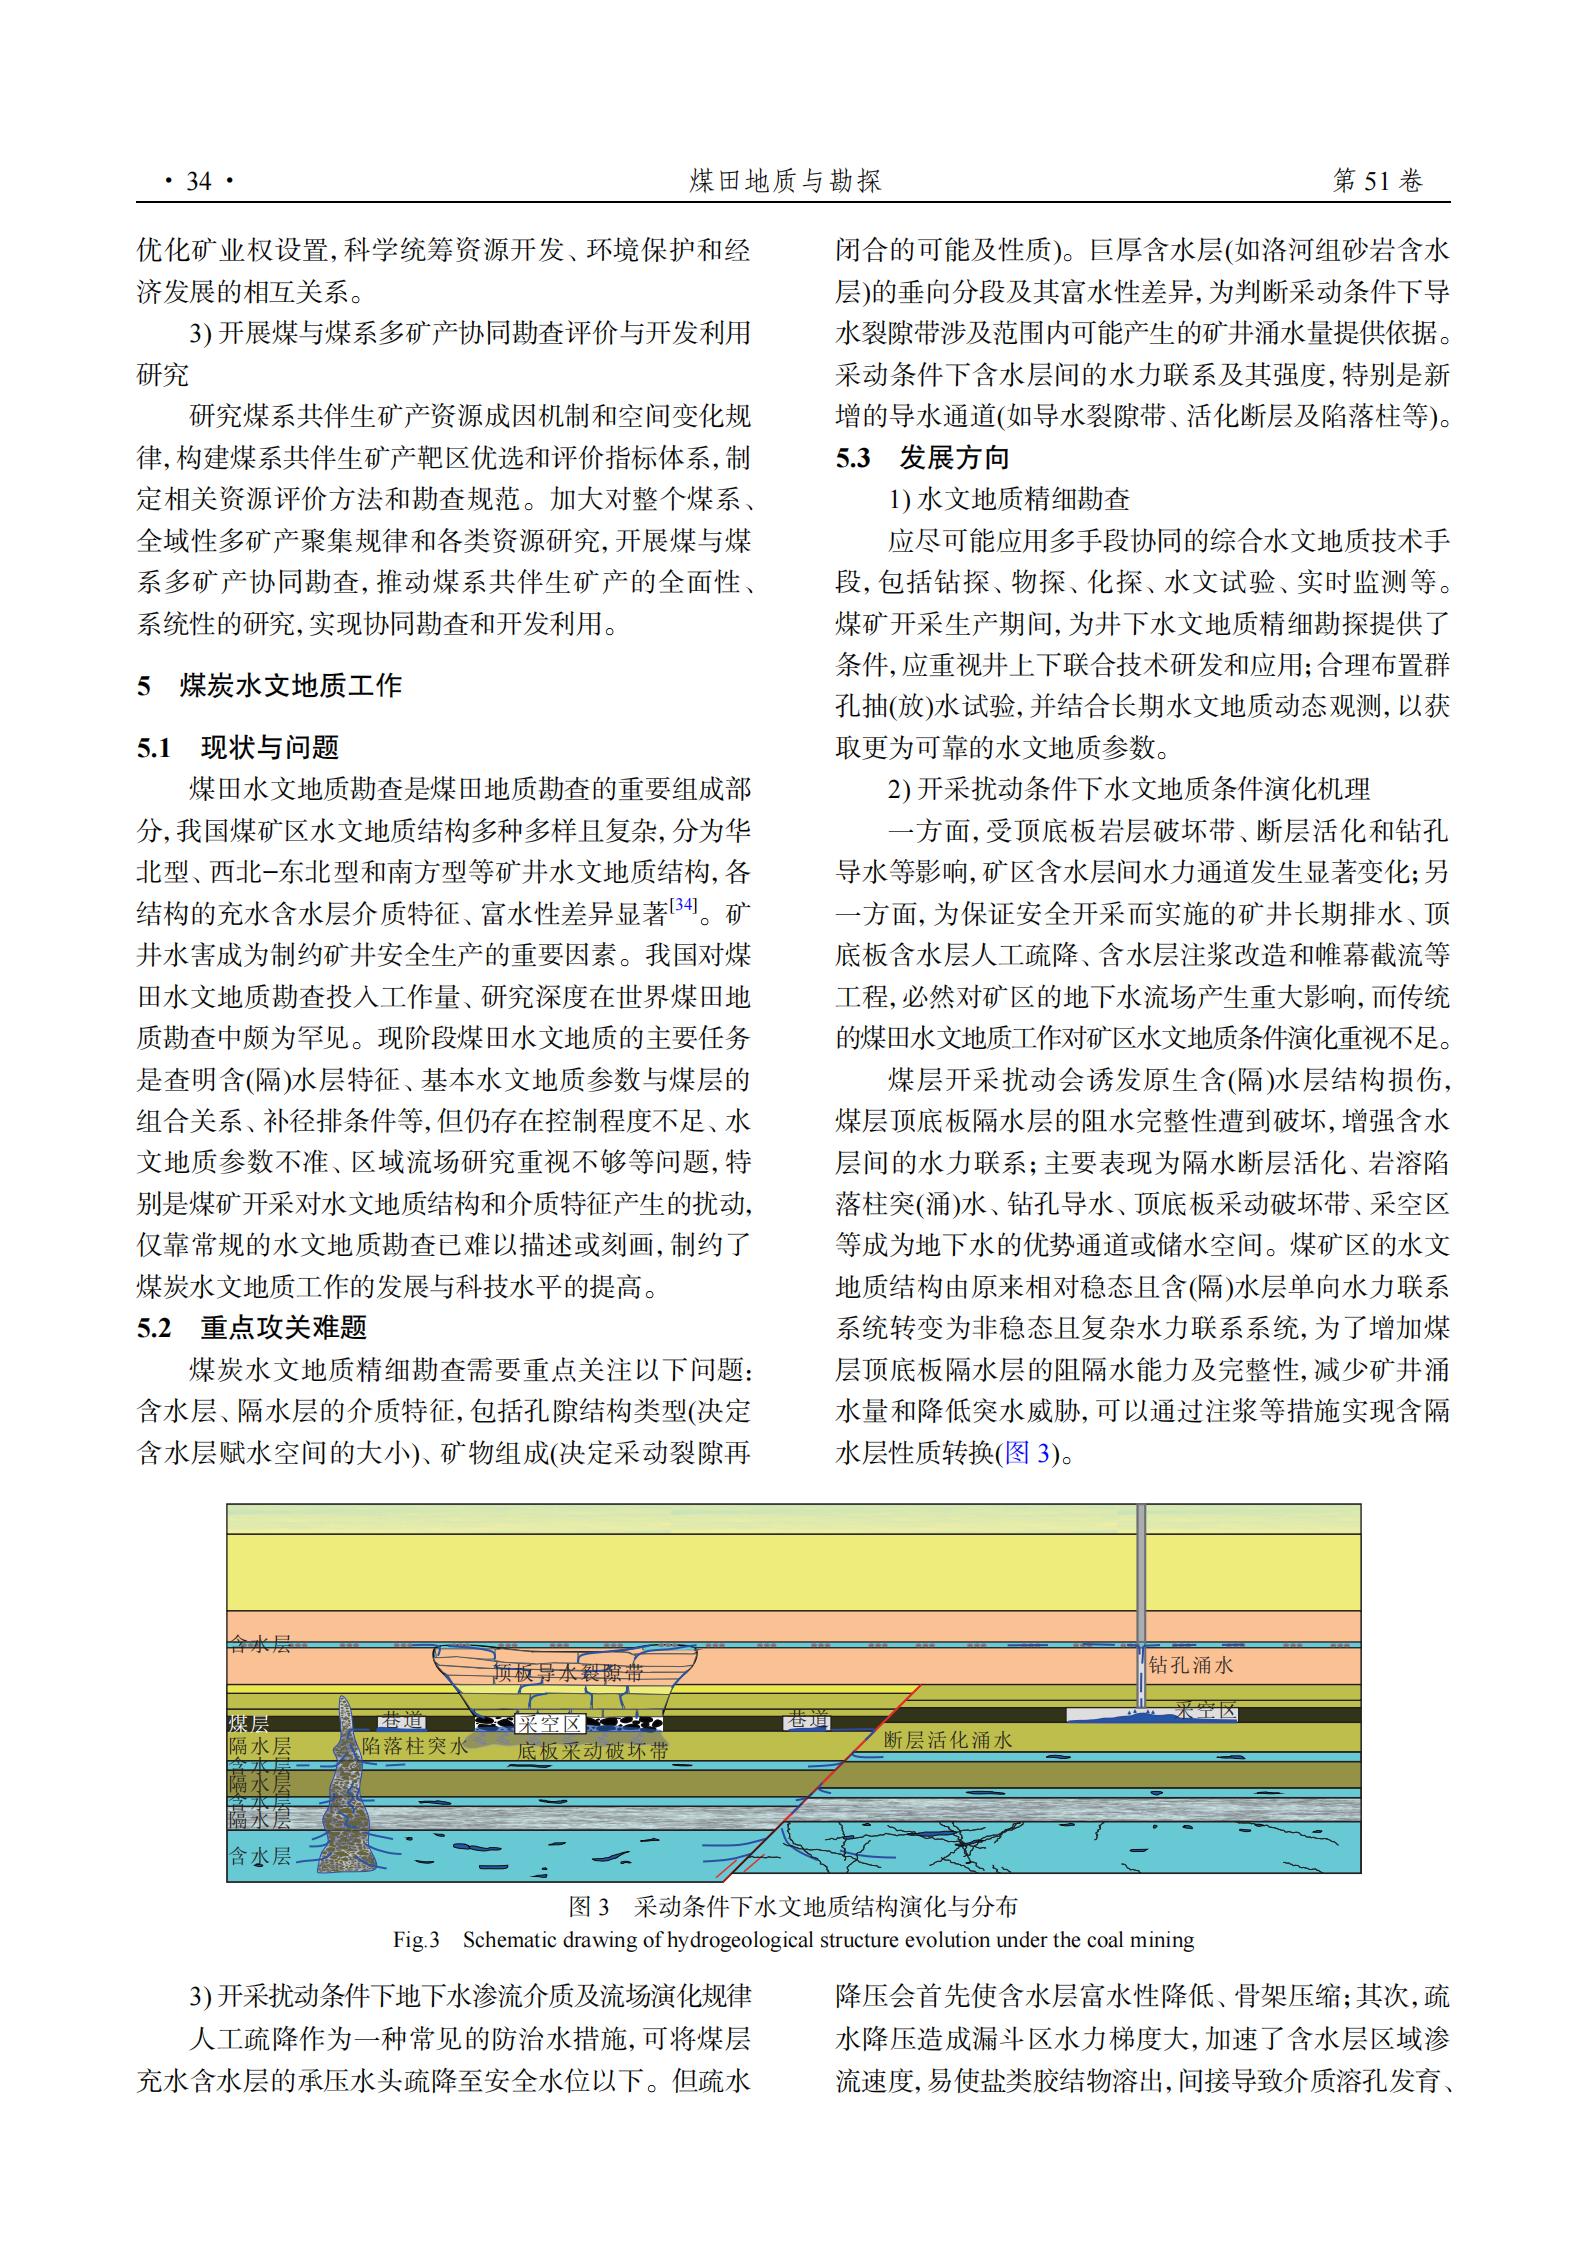 论中国煤炭地质勘查工作在新条件下的定位与重大研究问题_08.jpg